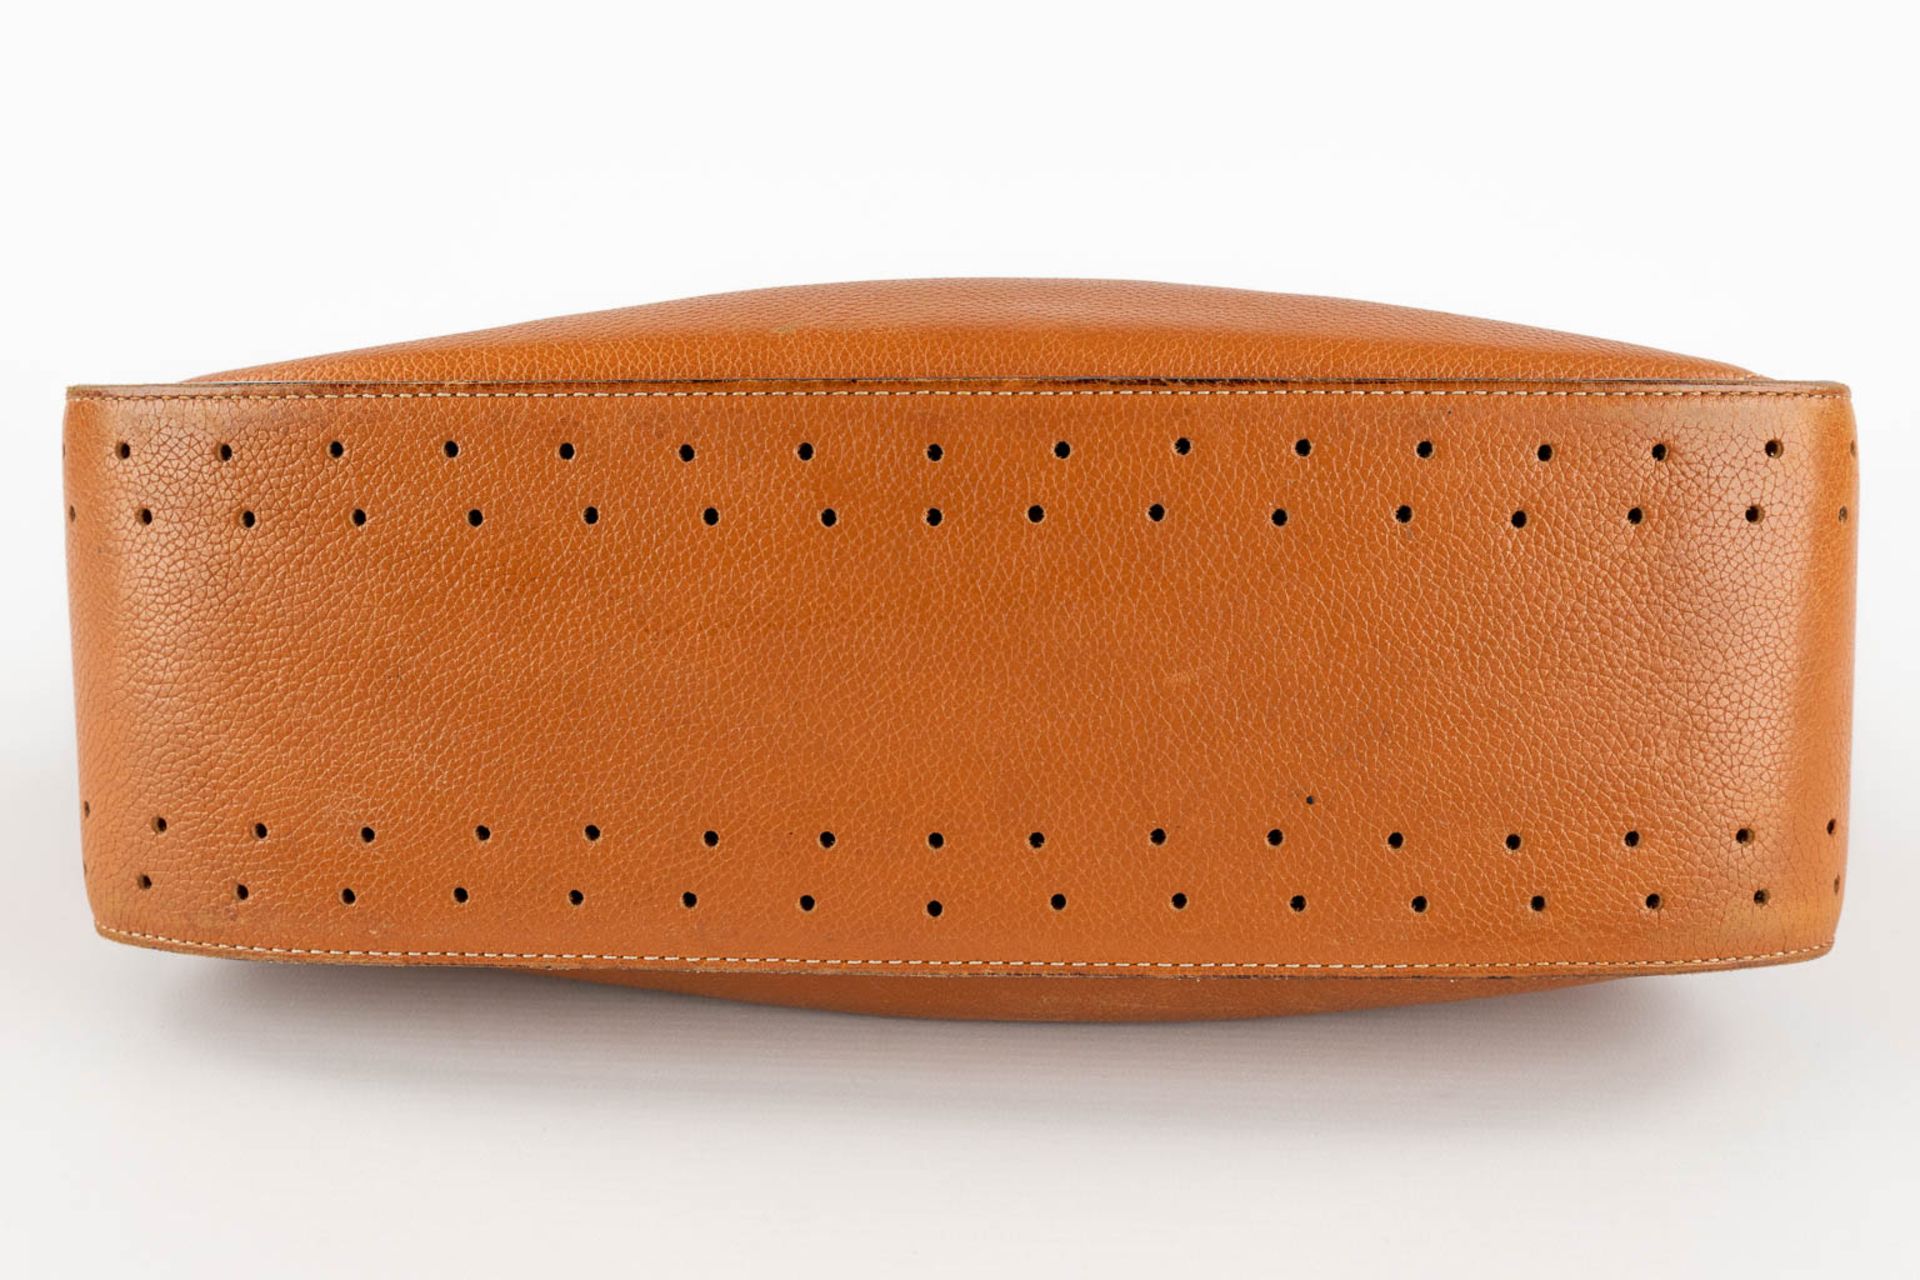 Delvaux, Pensée, a handbag made of brown leather. (W:24 x H:32 cm) - Bild 8 aus 18